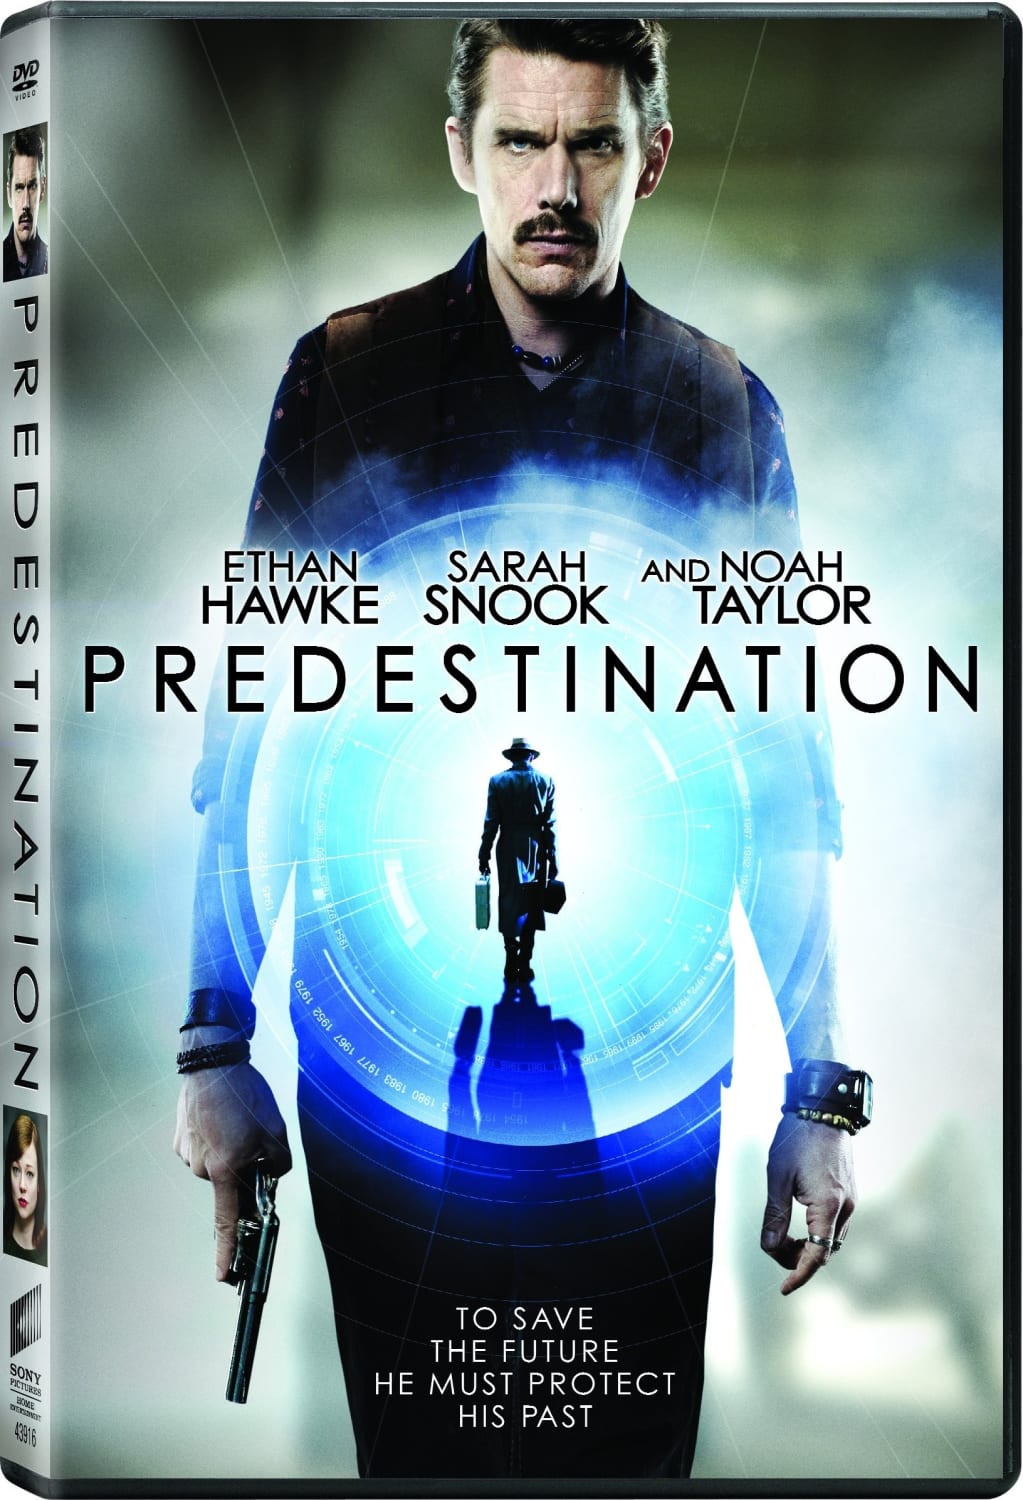 Predestination (DVD) on MovieShack